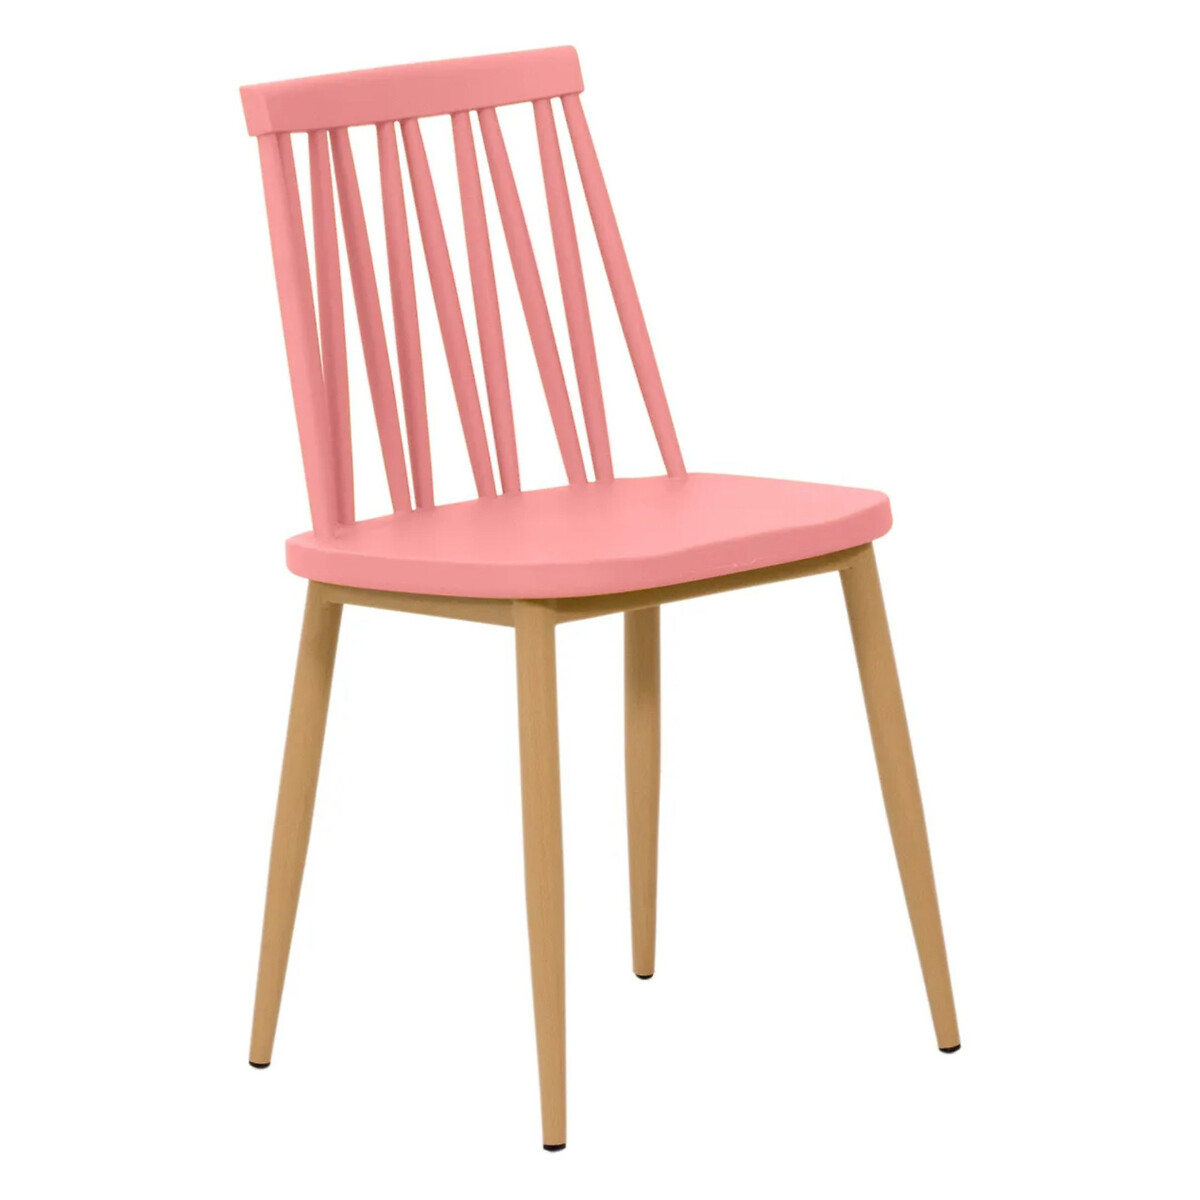 Стул Zig Zag единый размер розовый стул eirill единый размер розовый